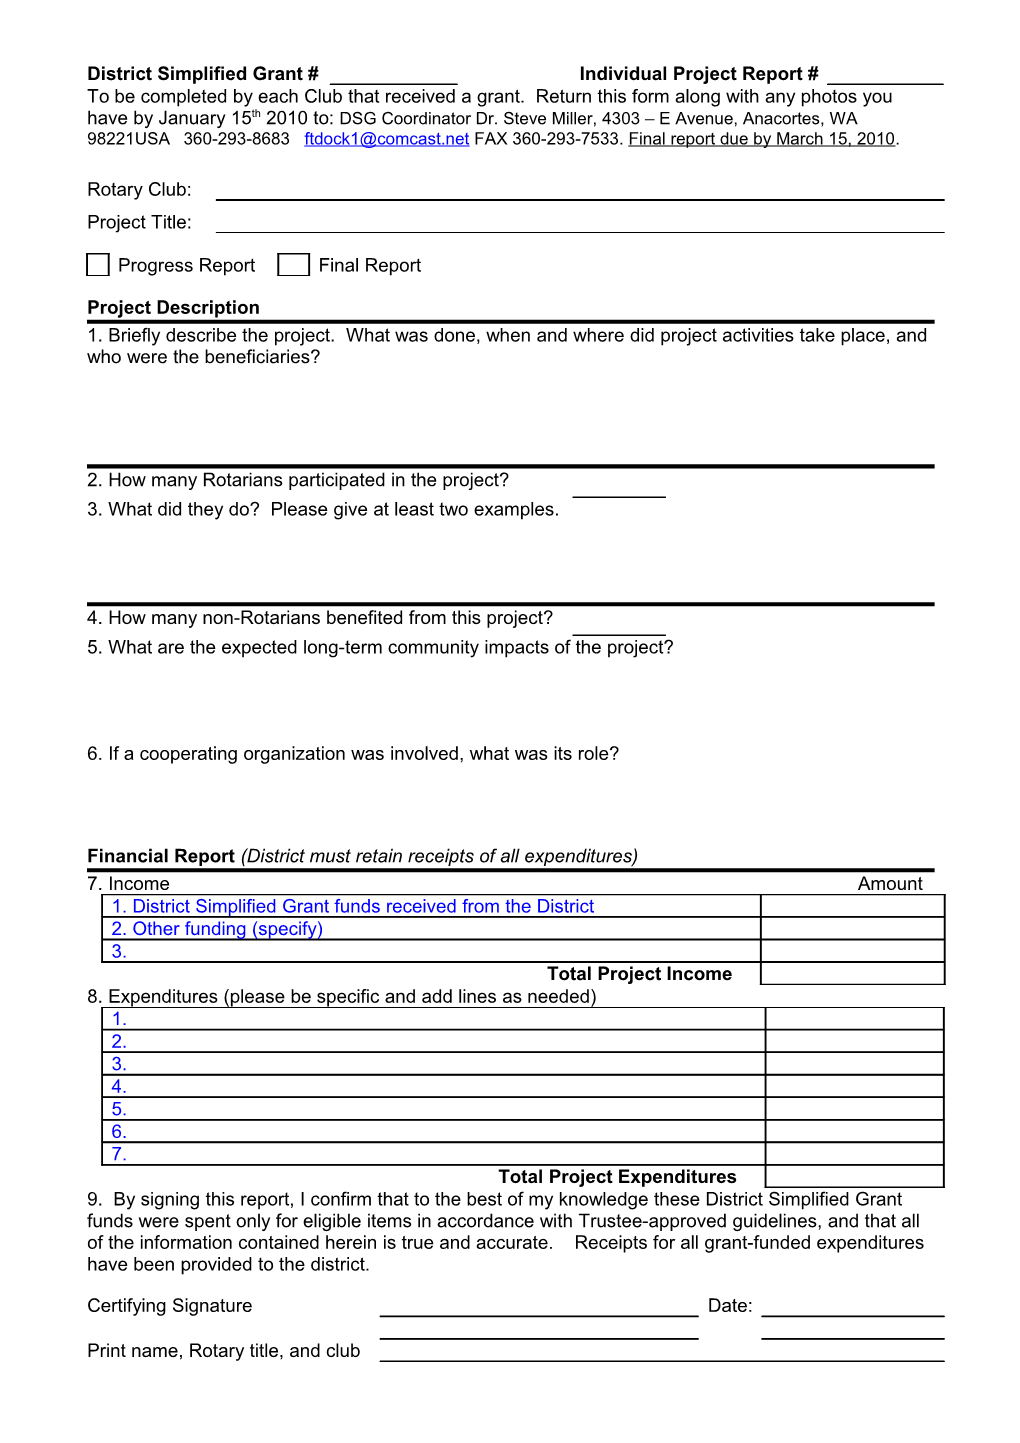 Individual Grants Report Form s2